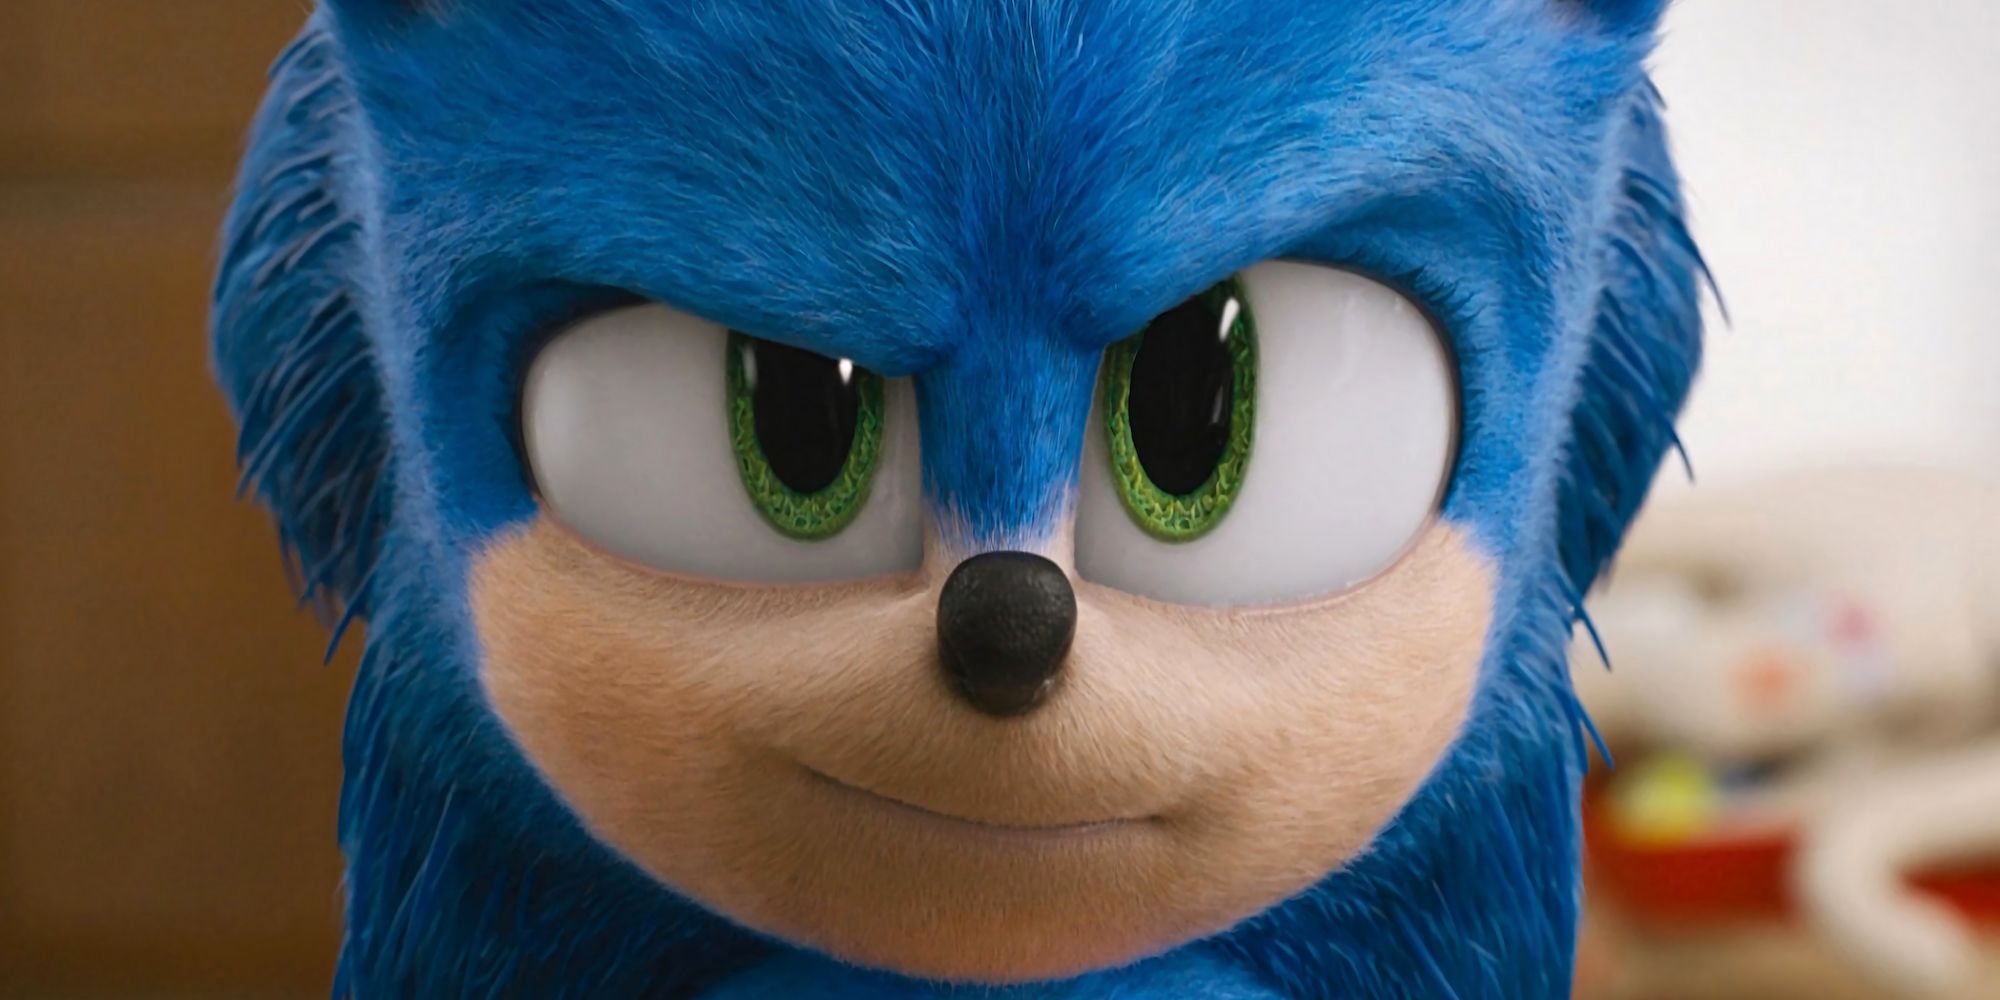 Según se informa, SEGA está planeando el parque temático Sonic the Hedgehog después del éxito de la película